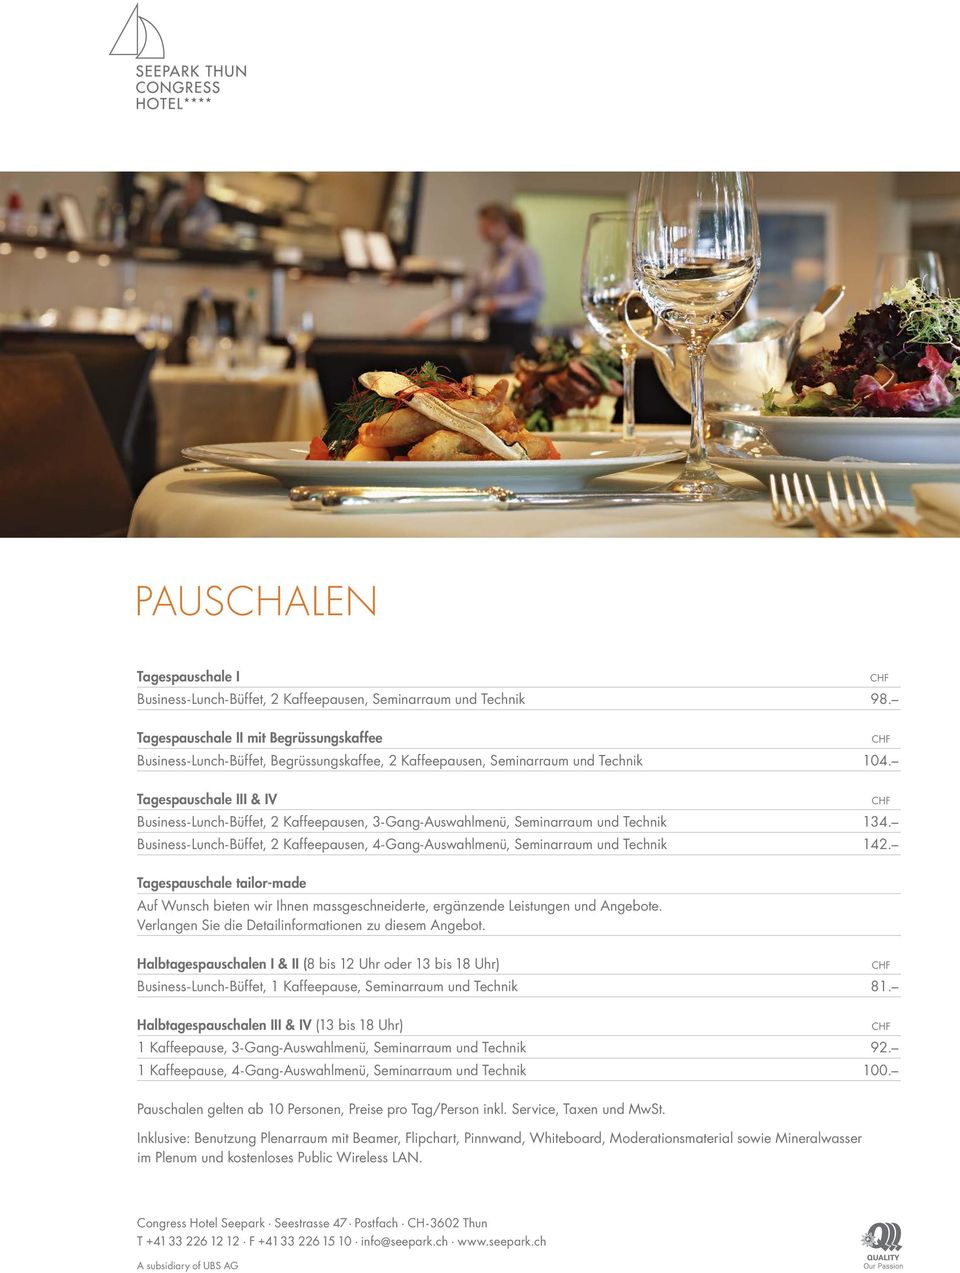 Tagespauschale III & IV Business-Lunch-Büffet, 2 Kaffeepausen, 3- Gang-Auswahlmenü, Seminarraum und Technik 134.